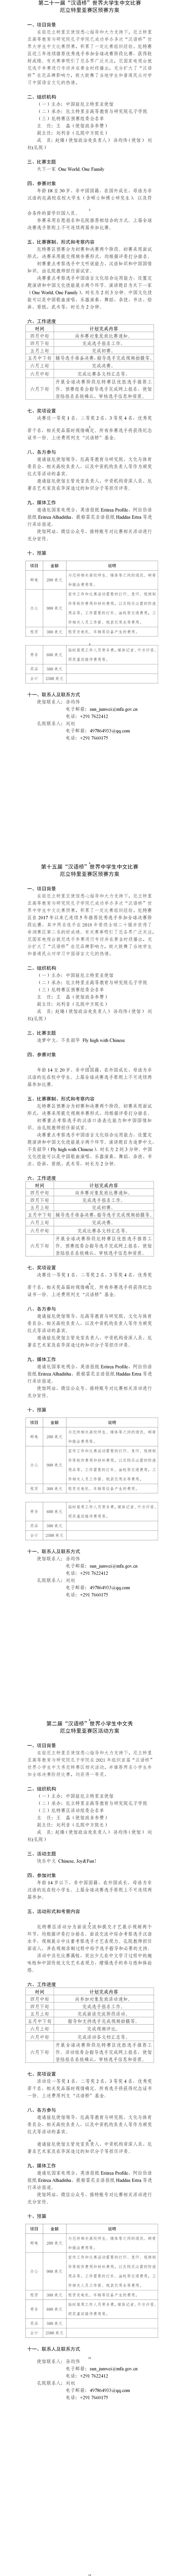 2022年汉语桥世界大中小学生中文比赛厄立特里亚赛区预赛方案.jpg